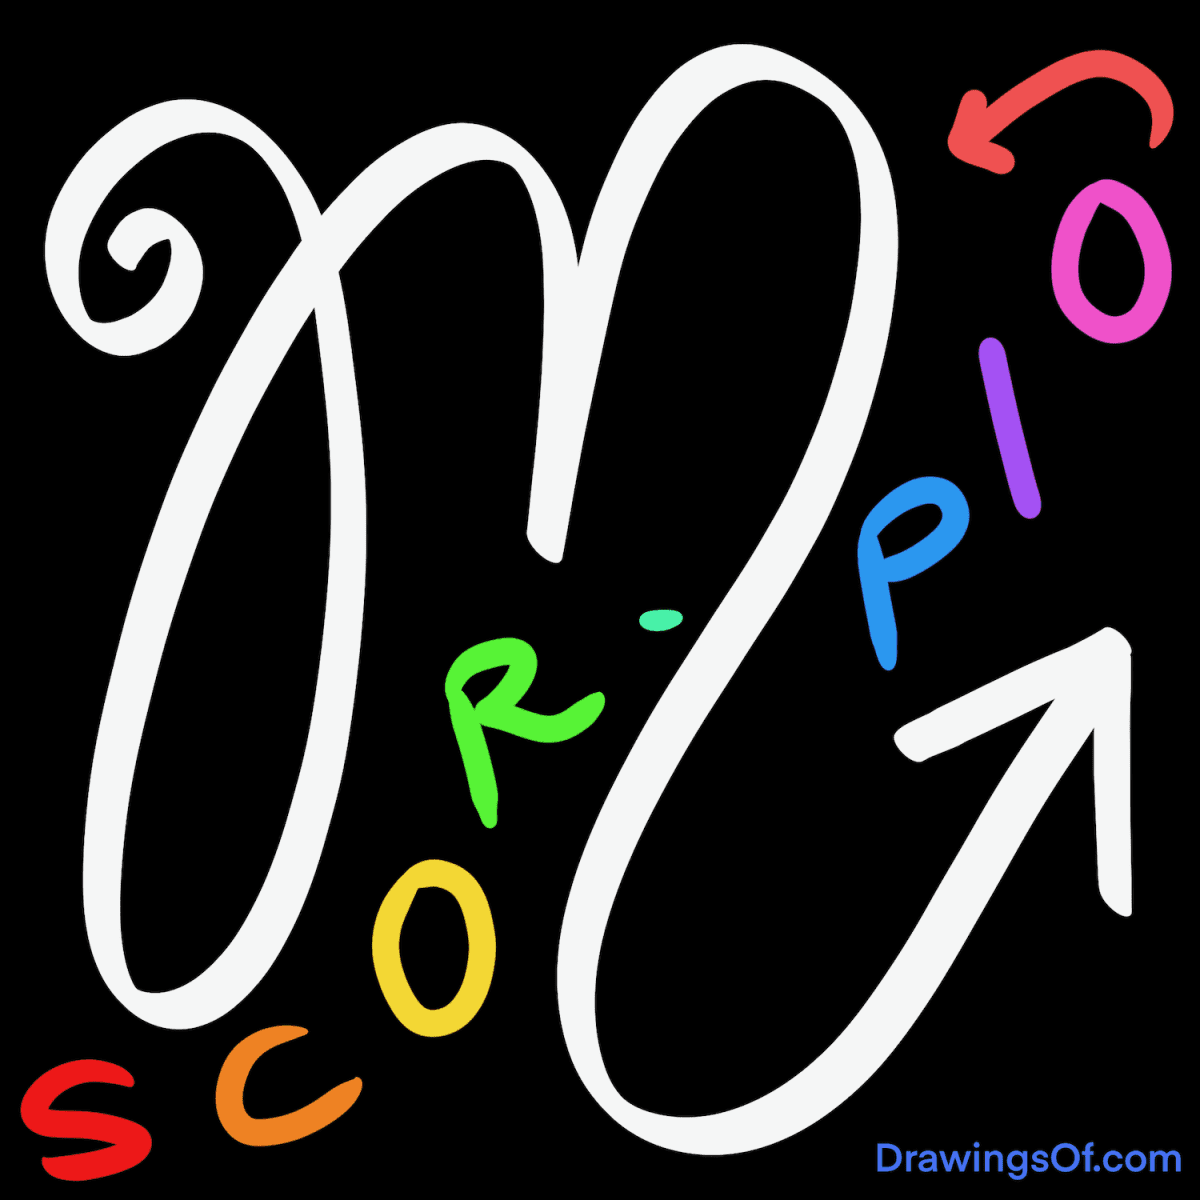 Scorpio zodiac symbol